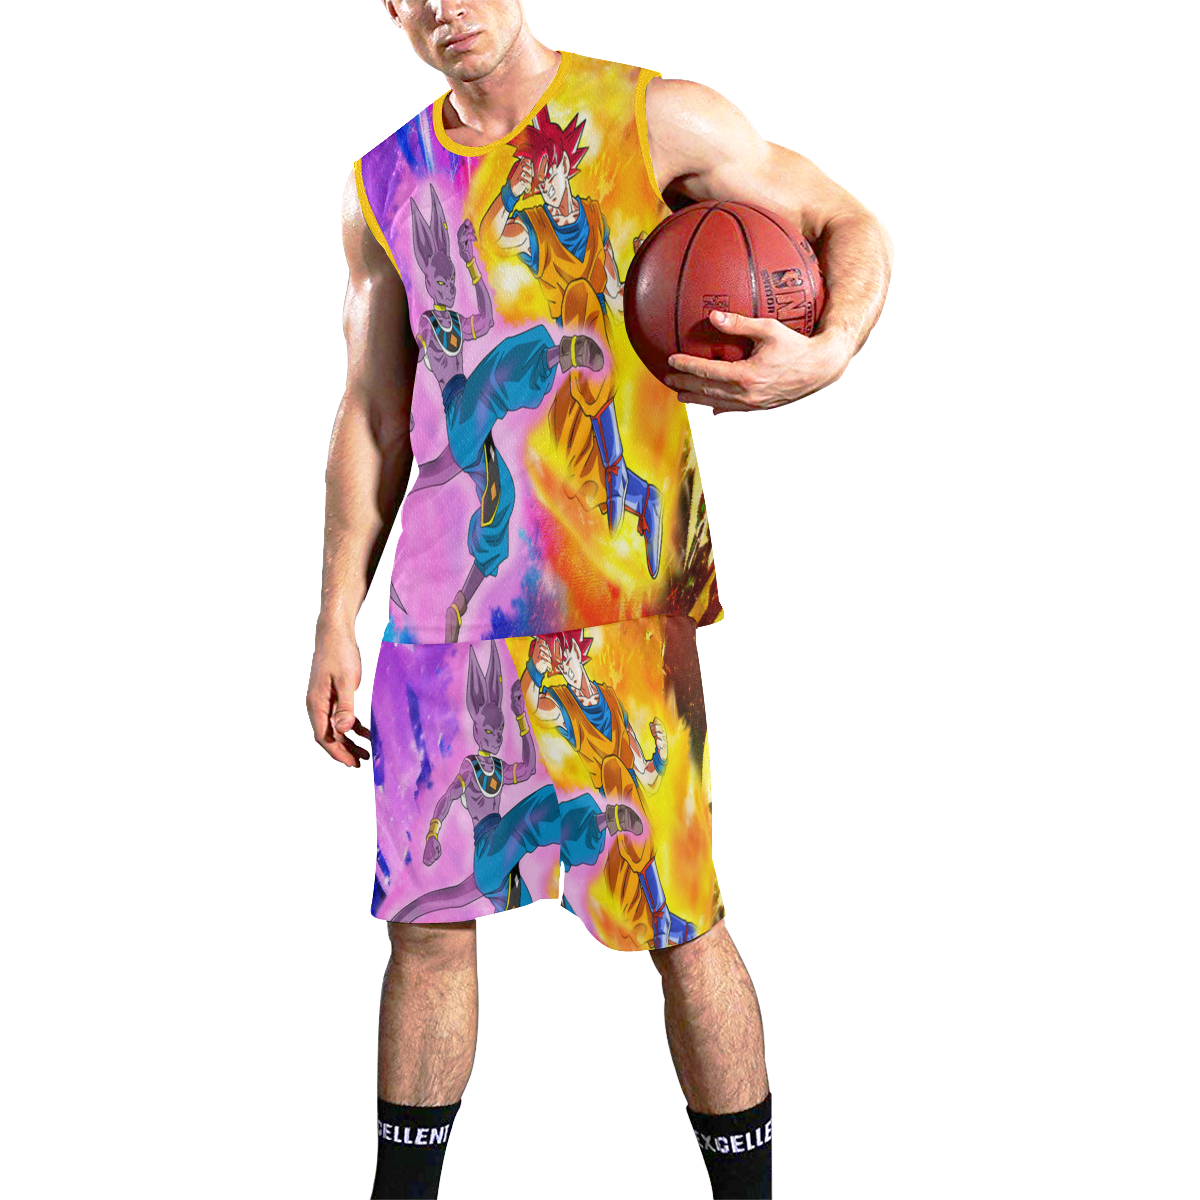 BEERUS VS GOKU All Over Print Basketball Uniform